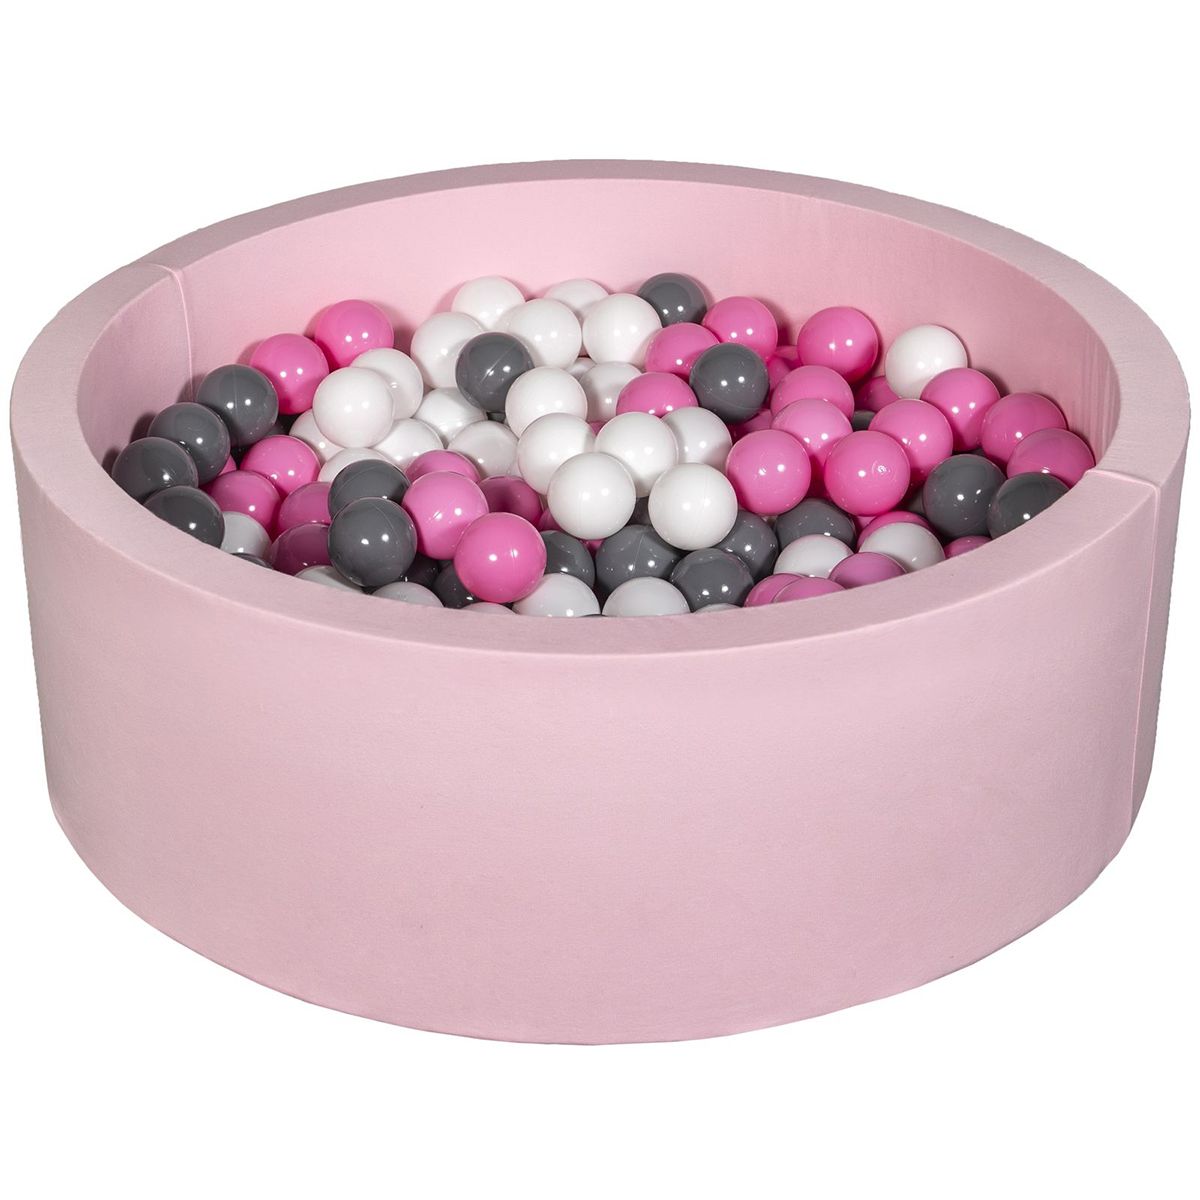  Piscine à balles Aire de jeu + 300 balles rose blanc,rose clair,gris